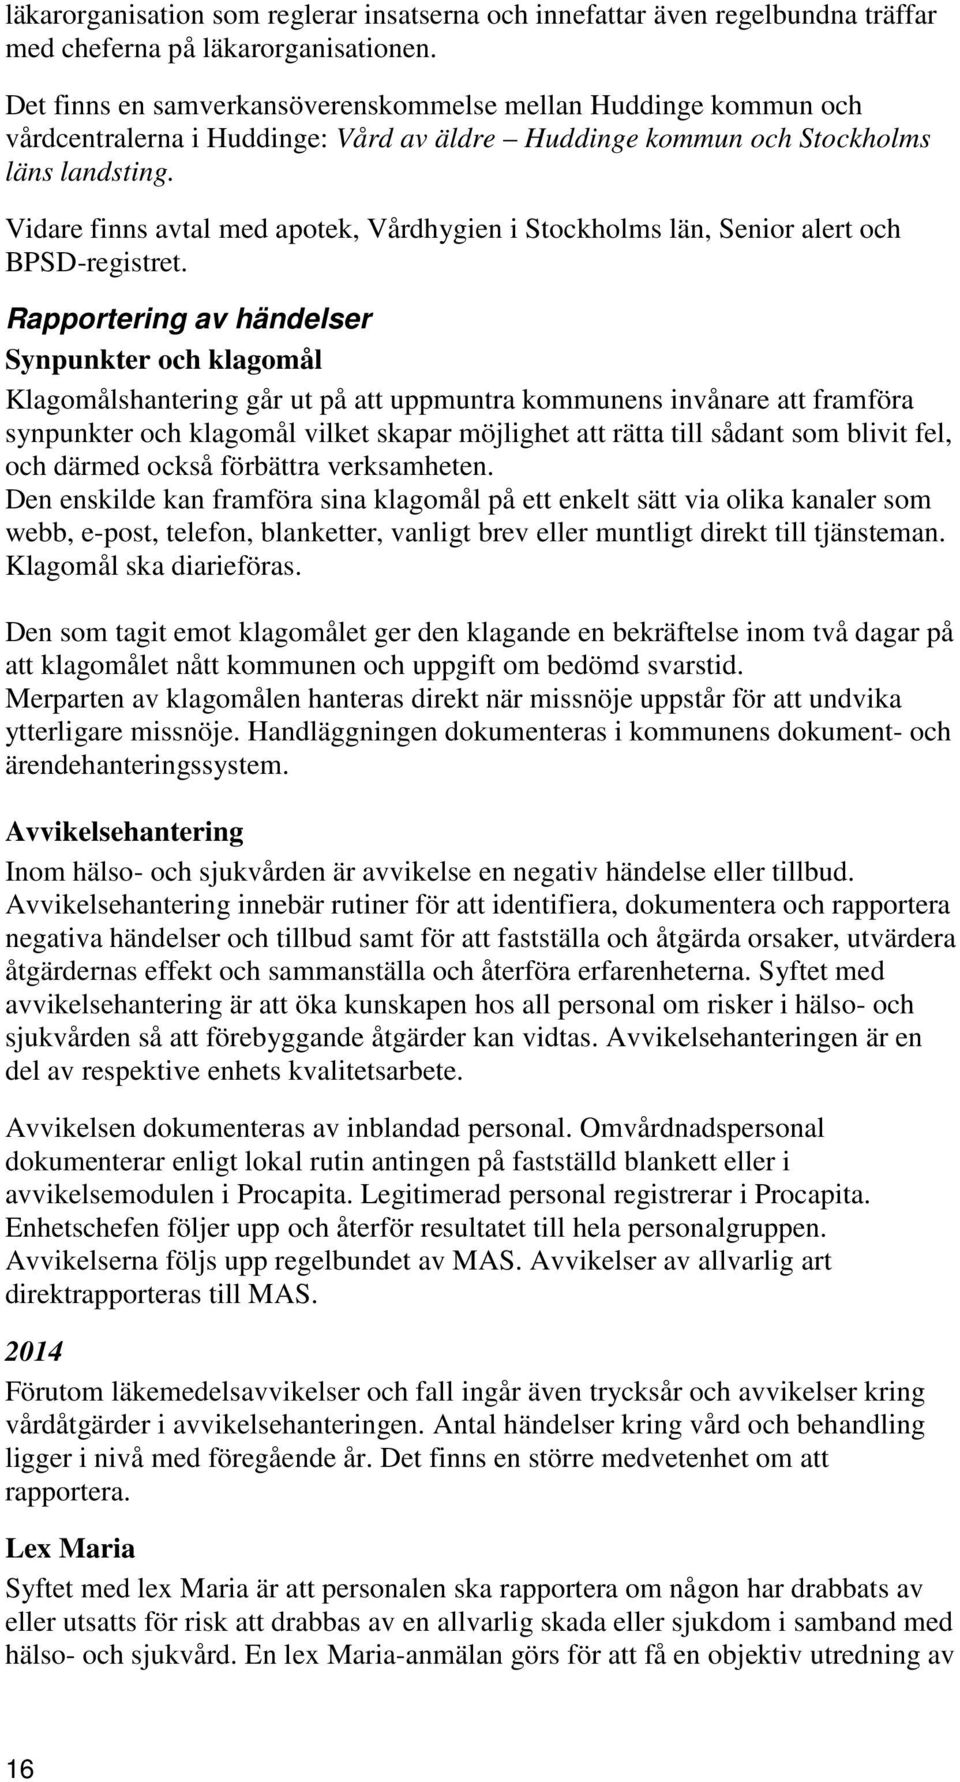 Vidare finns avtal med apotek, Vårdhygien i Stockholms län, Senior alert och BPSD-registret.